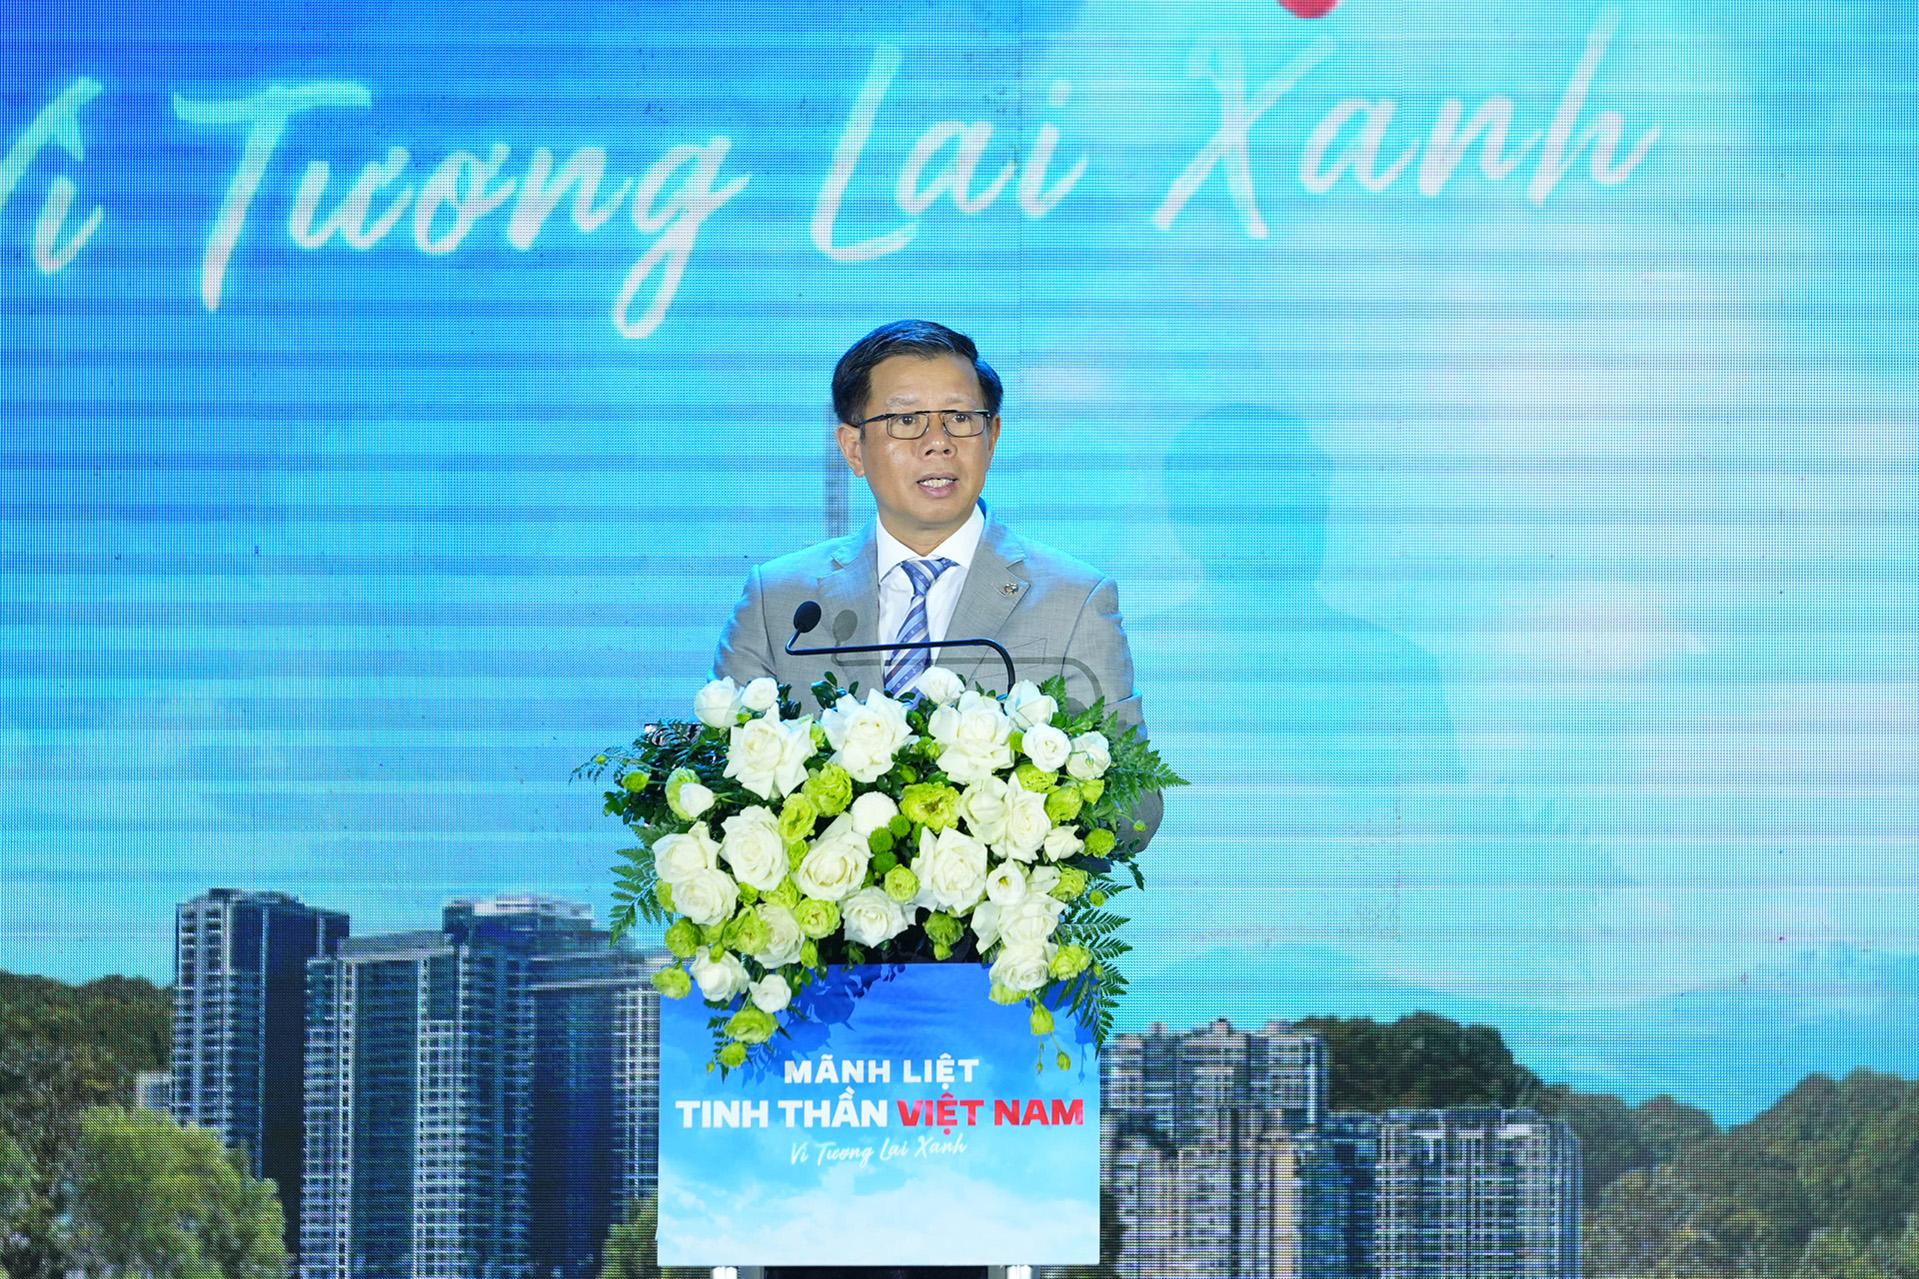 Ông Nguyễn Việt Quang - Phó Chủ tịch kiêm Tổng Giám đốc Tập đoàn Vingroup